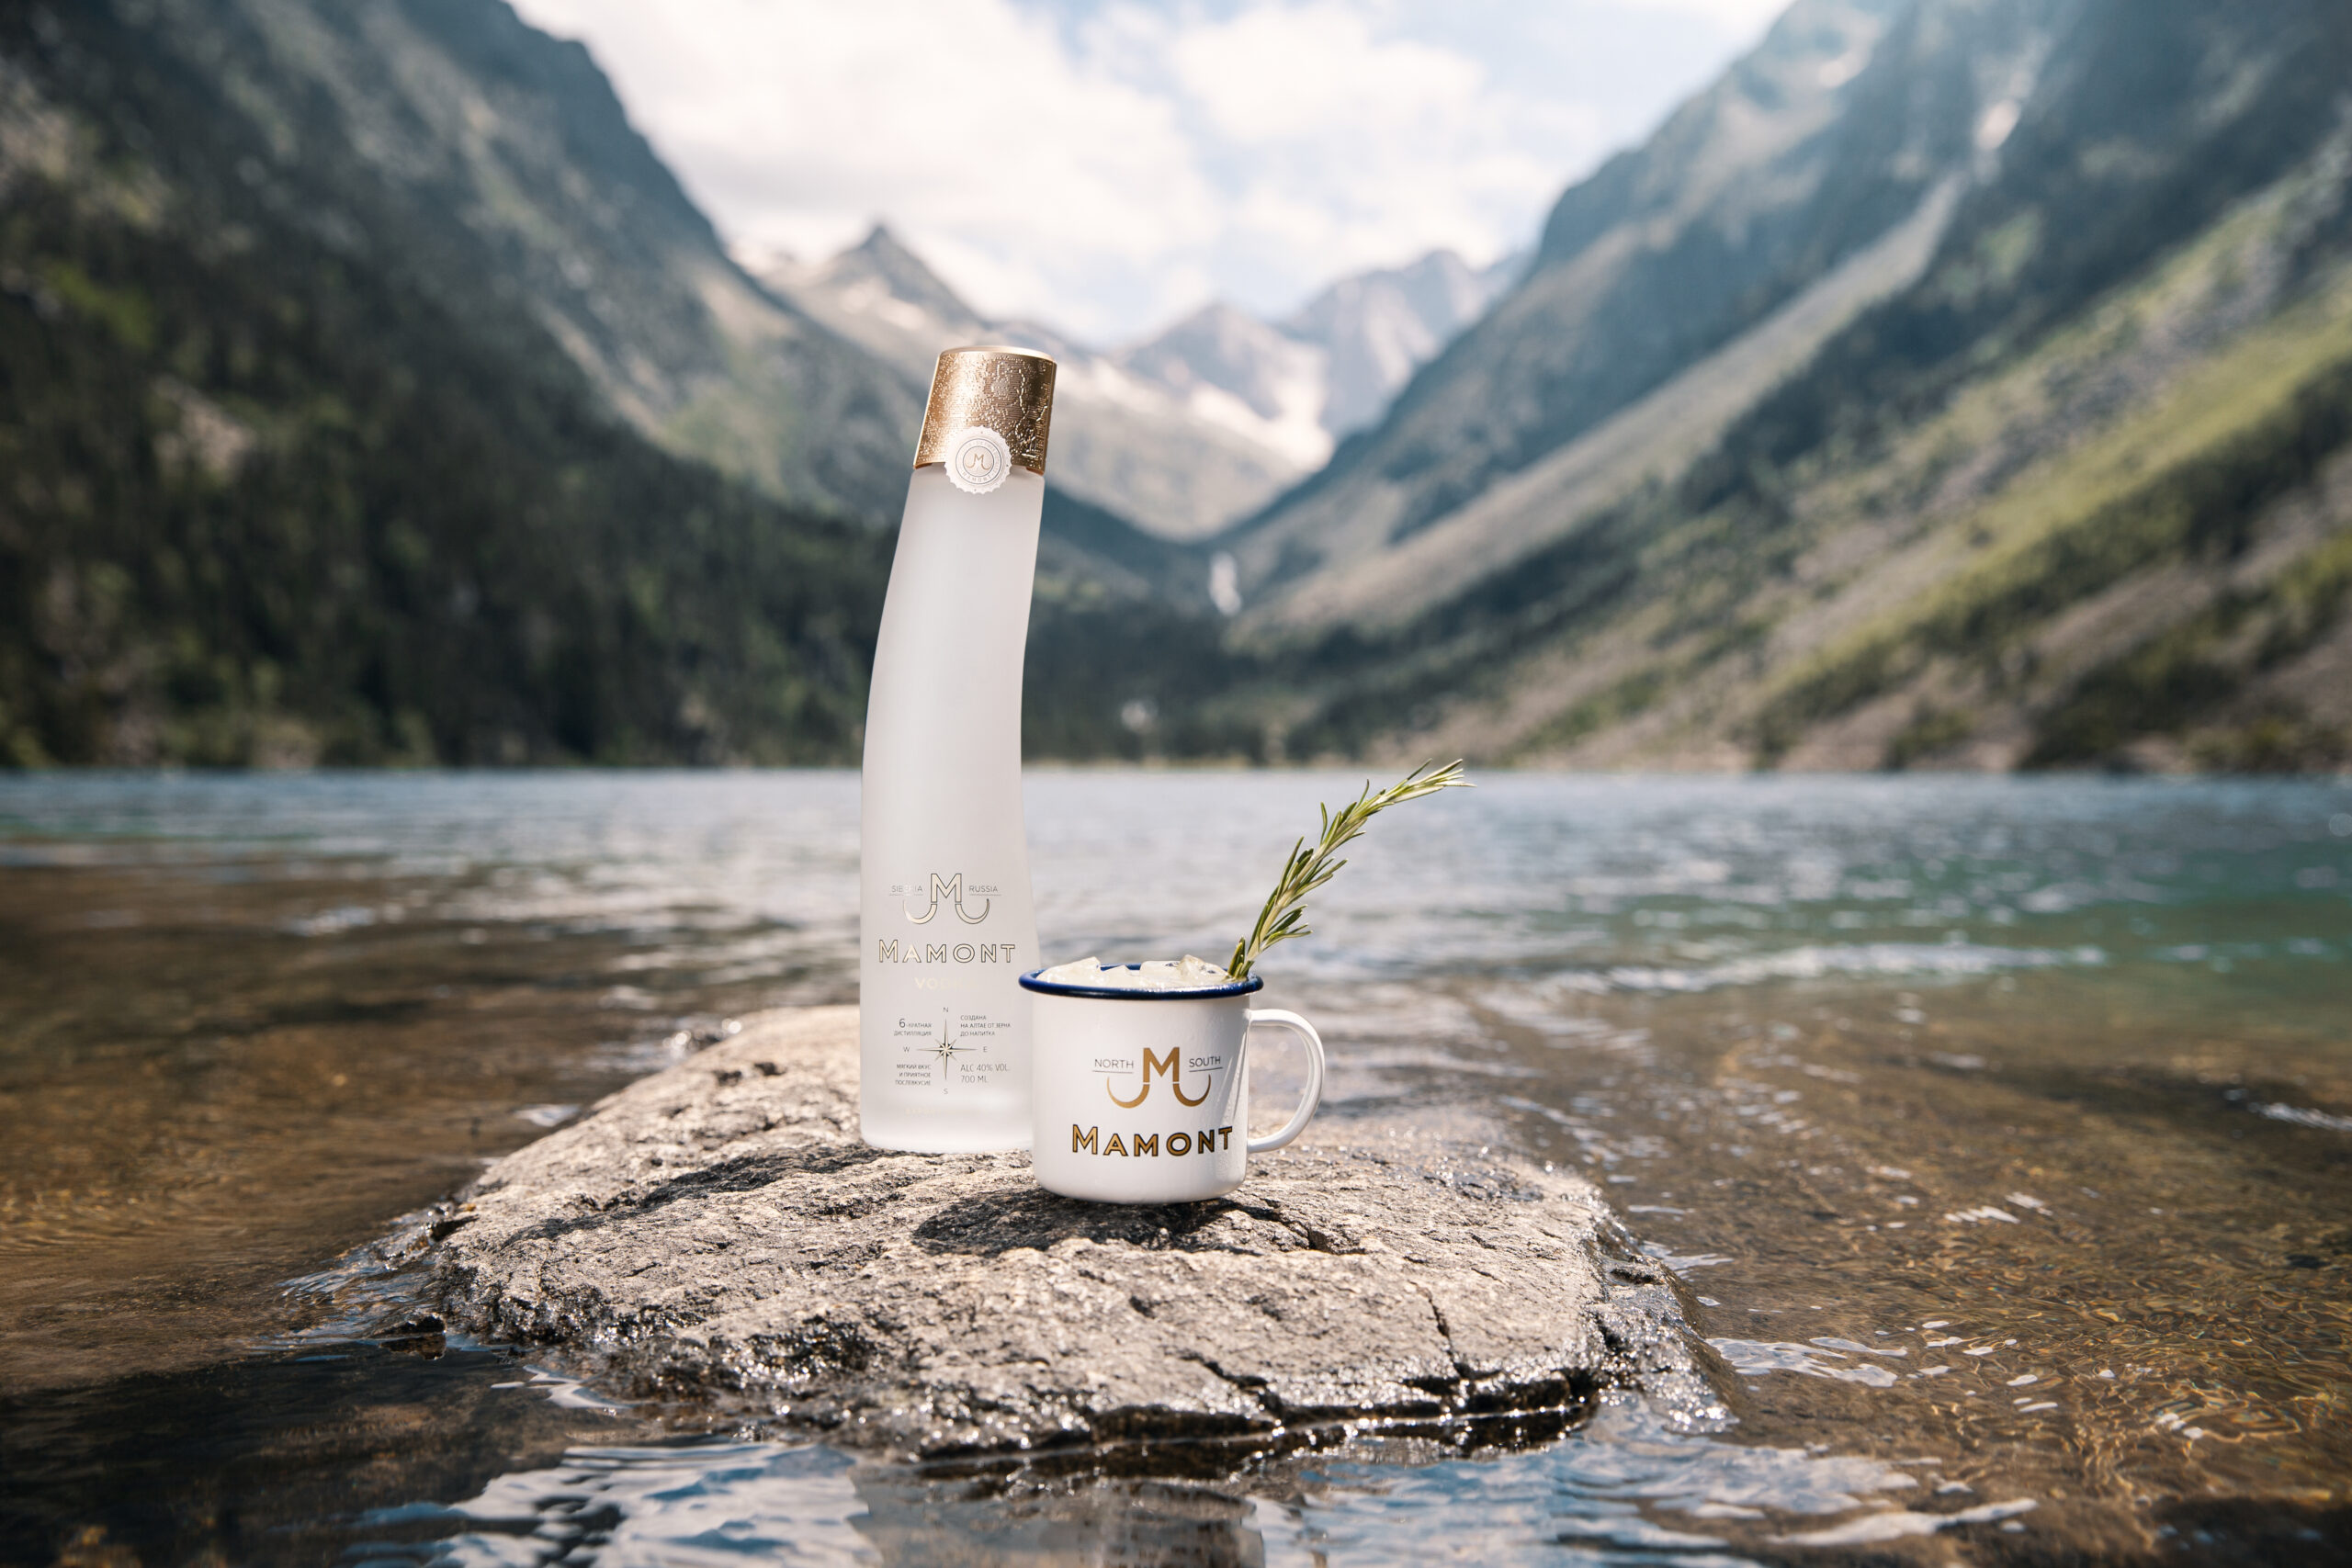 Mamont Flasche steht auf einem Stein in einem Fluss, daneben steht ein eingeschenktes Glas